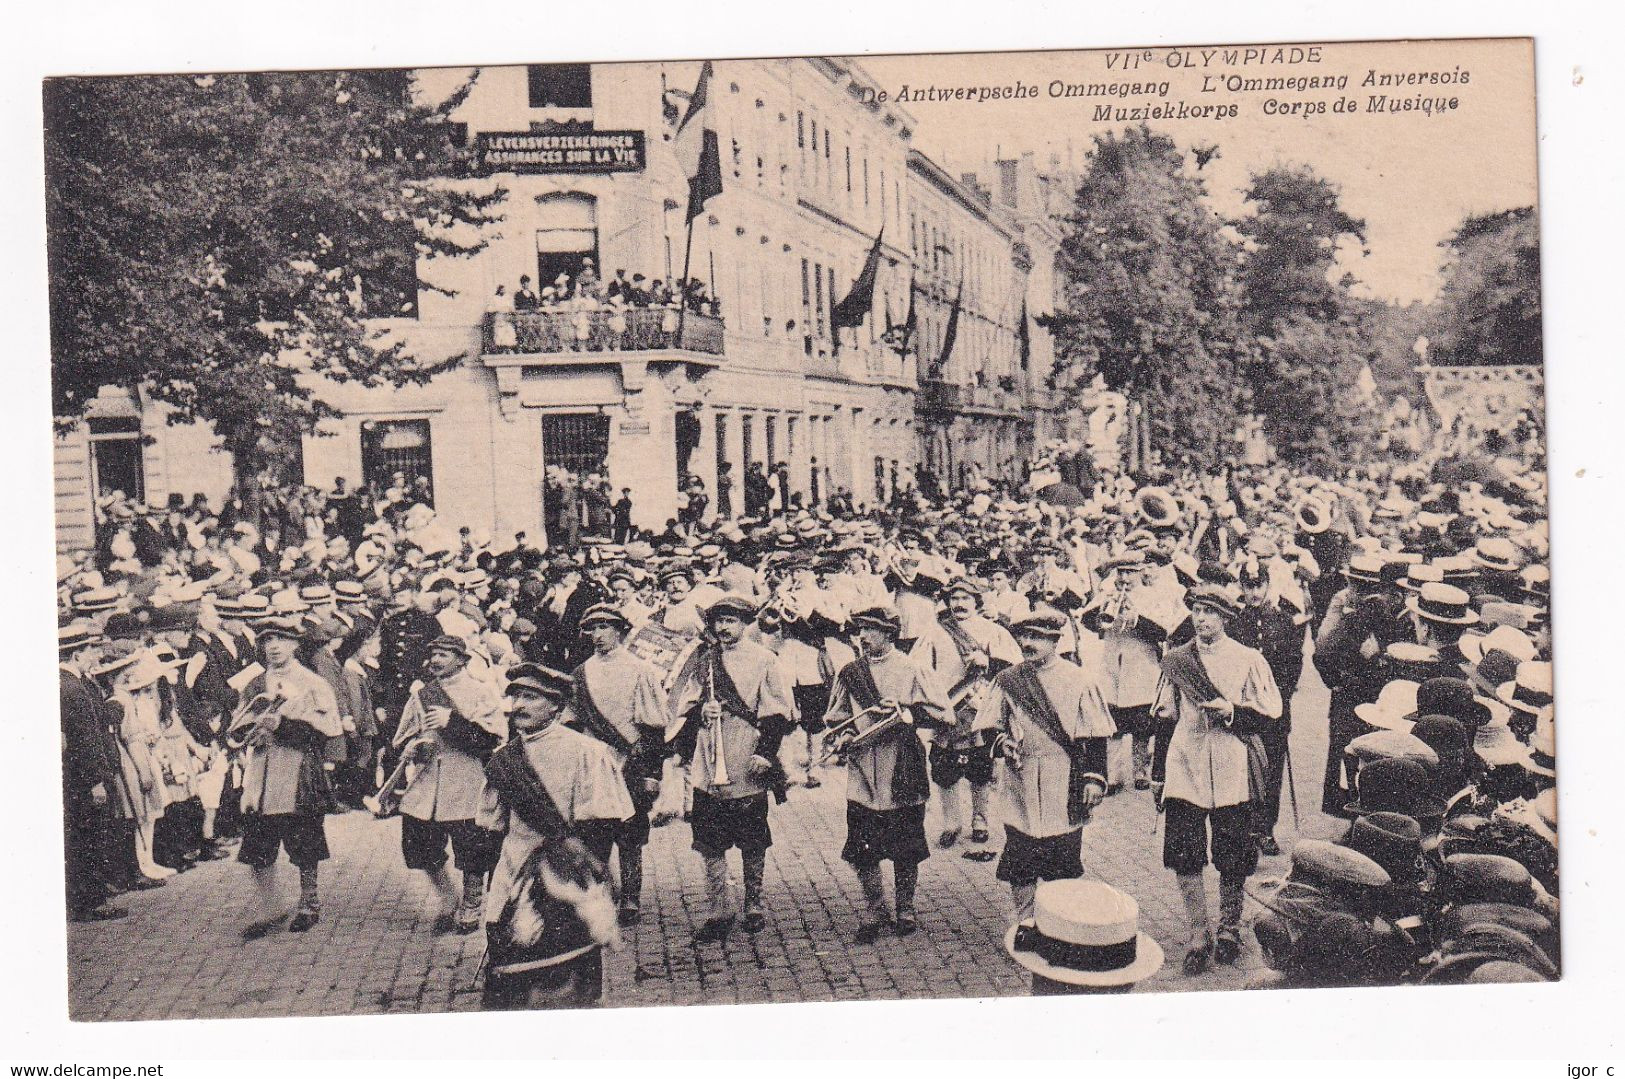 Belgium 1920 Card: Olympic Games Anvers Antwerp; Folklore Festival - Summer 1920: Antwerp